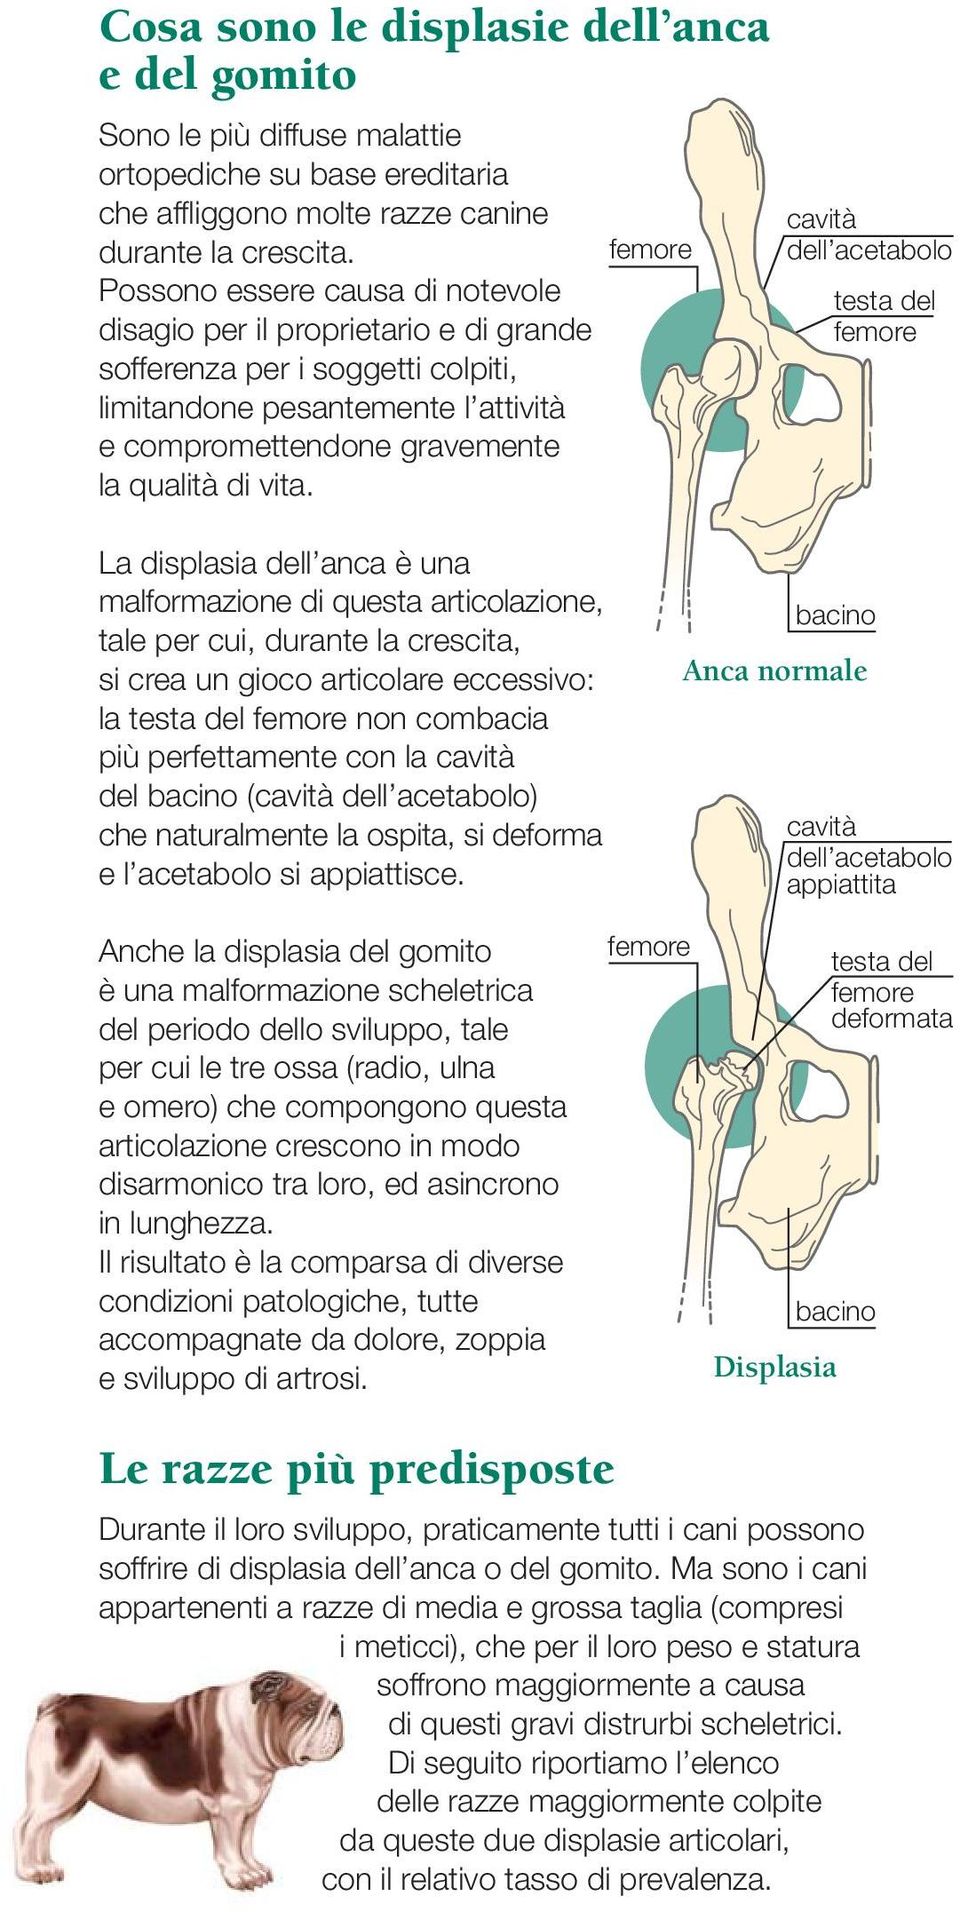 femore cavità dell acetabolo testa del femore La displasia dell anca è una malformazione di questa articolazione, tale per cui, durante la crescita, si crea un gioco articolare eccessivo: la testa